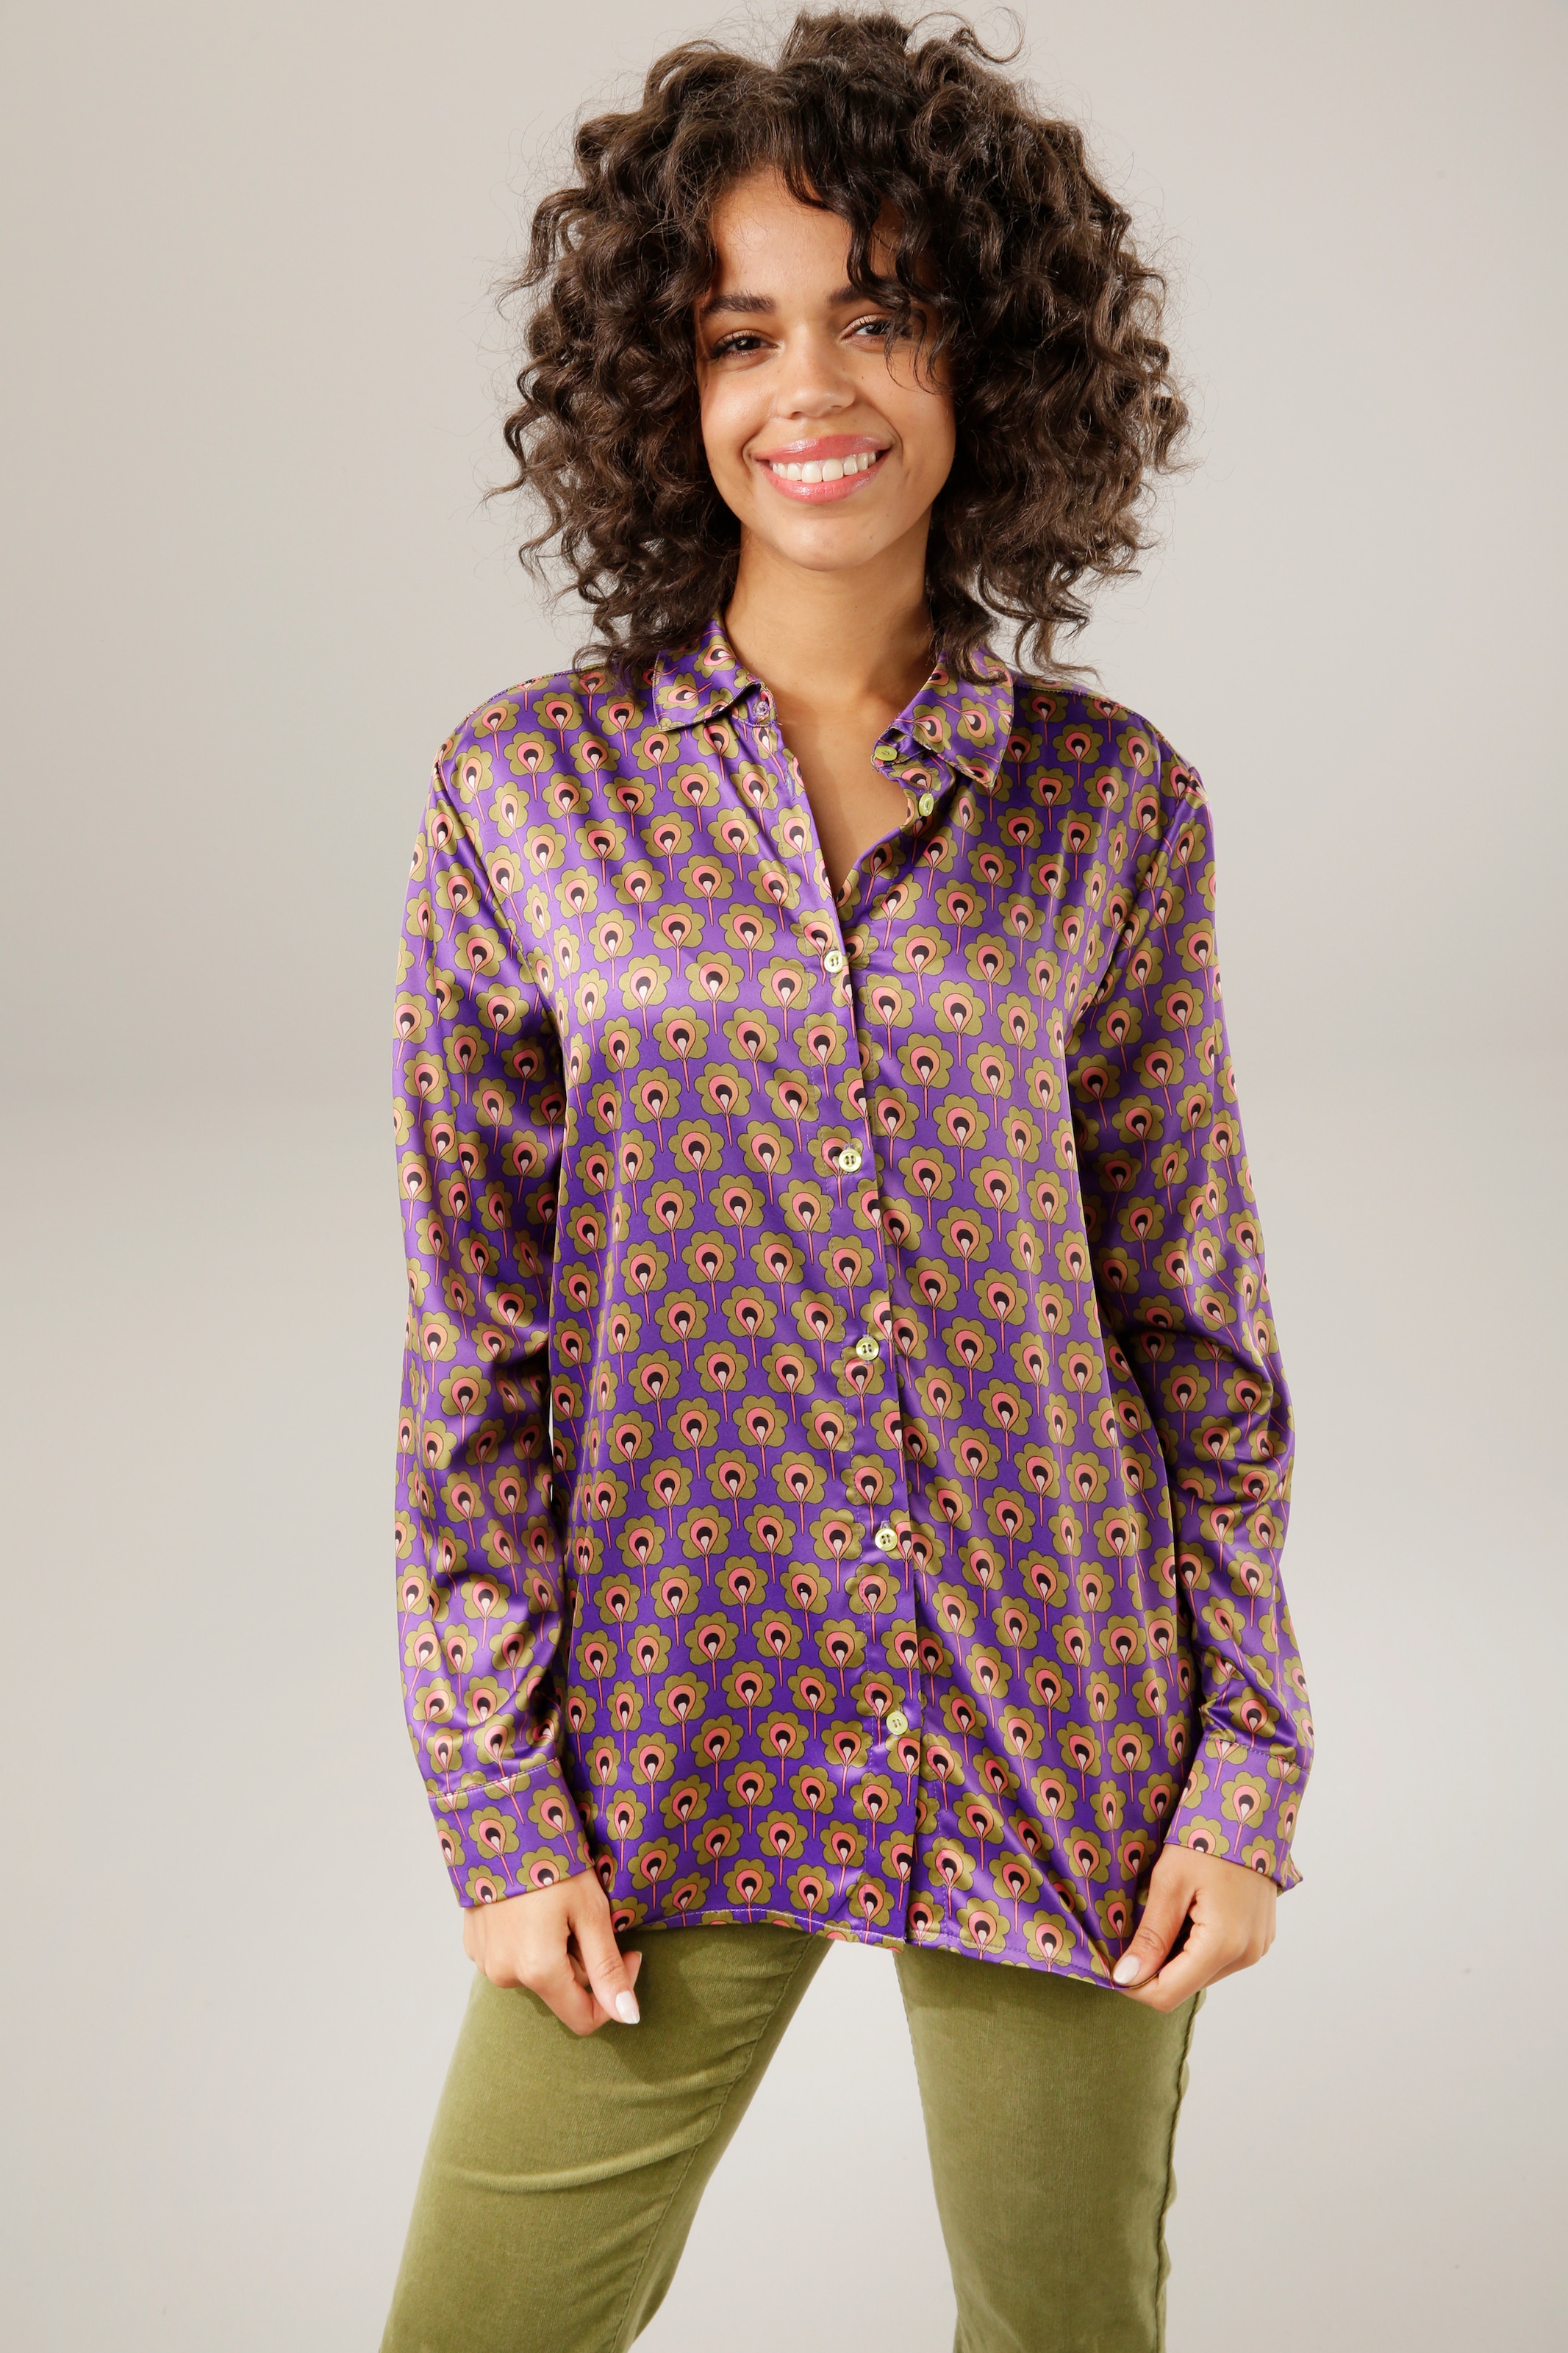 Hemden & Hemdblusen für Damen online bestellen